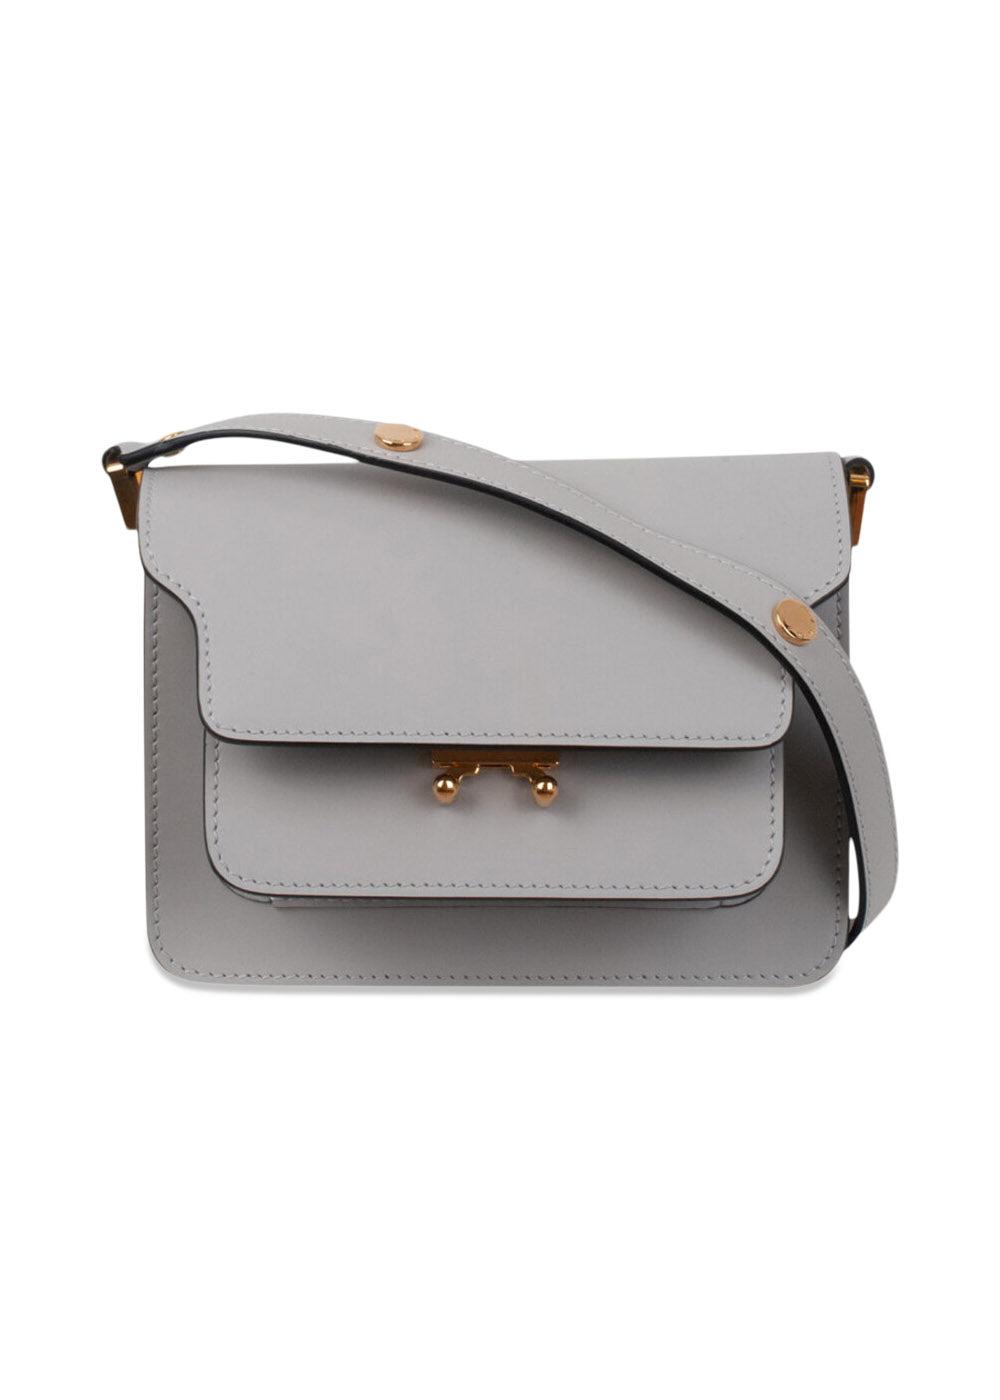 Marnis Trunk Bag - Dolphin. Køb designertasker||håndtasker||skuldertasker her.